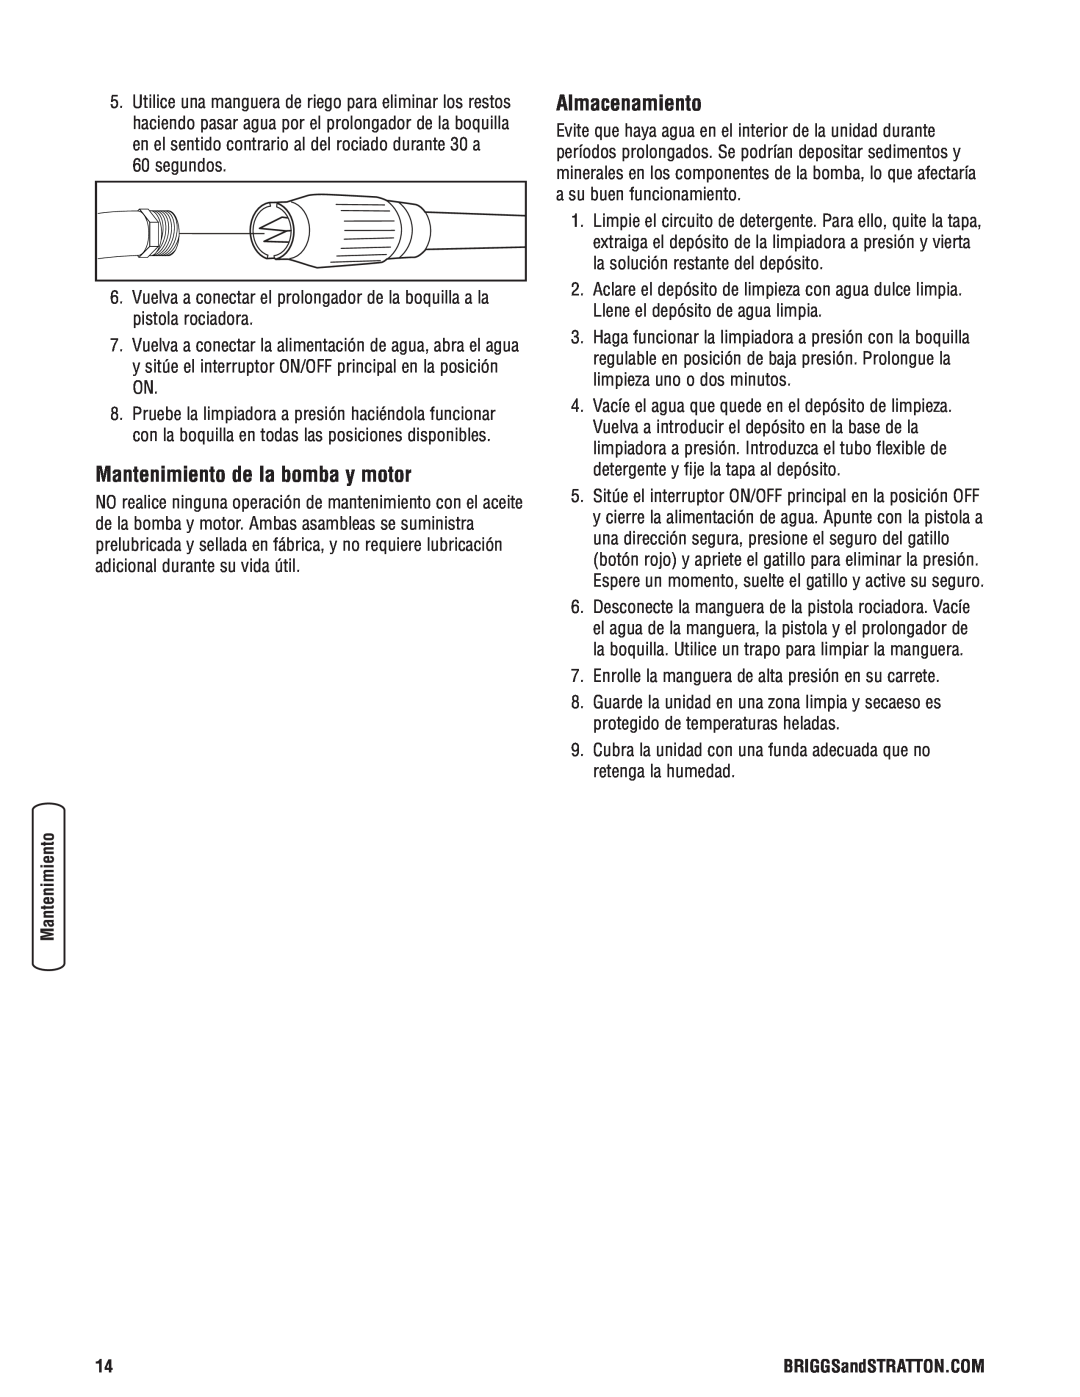 Briggs & Stratton Electric Pressure Washer manual Mantenimiento de la bomba y motor, Almacenamiento 